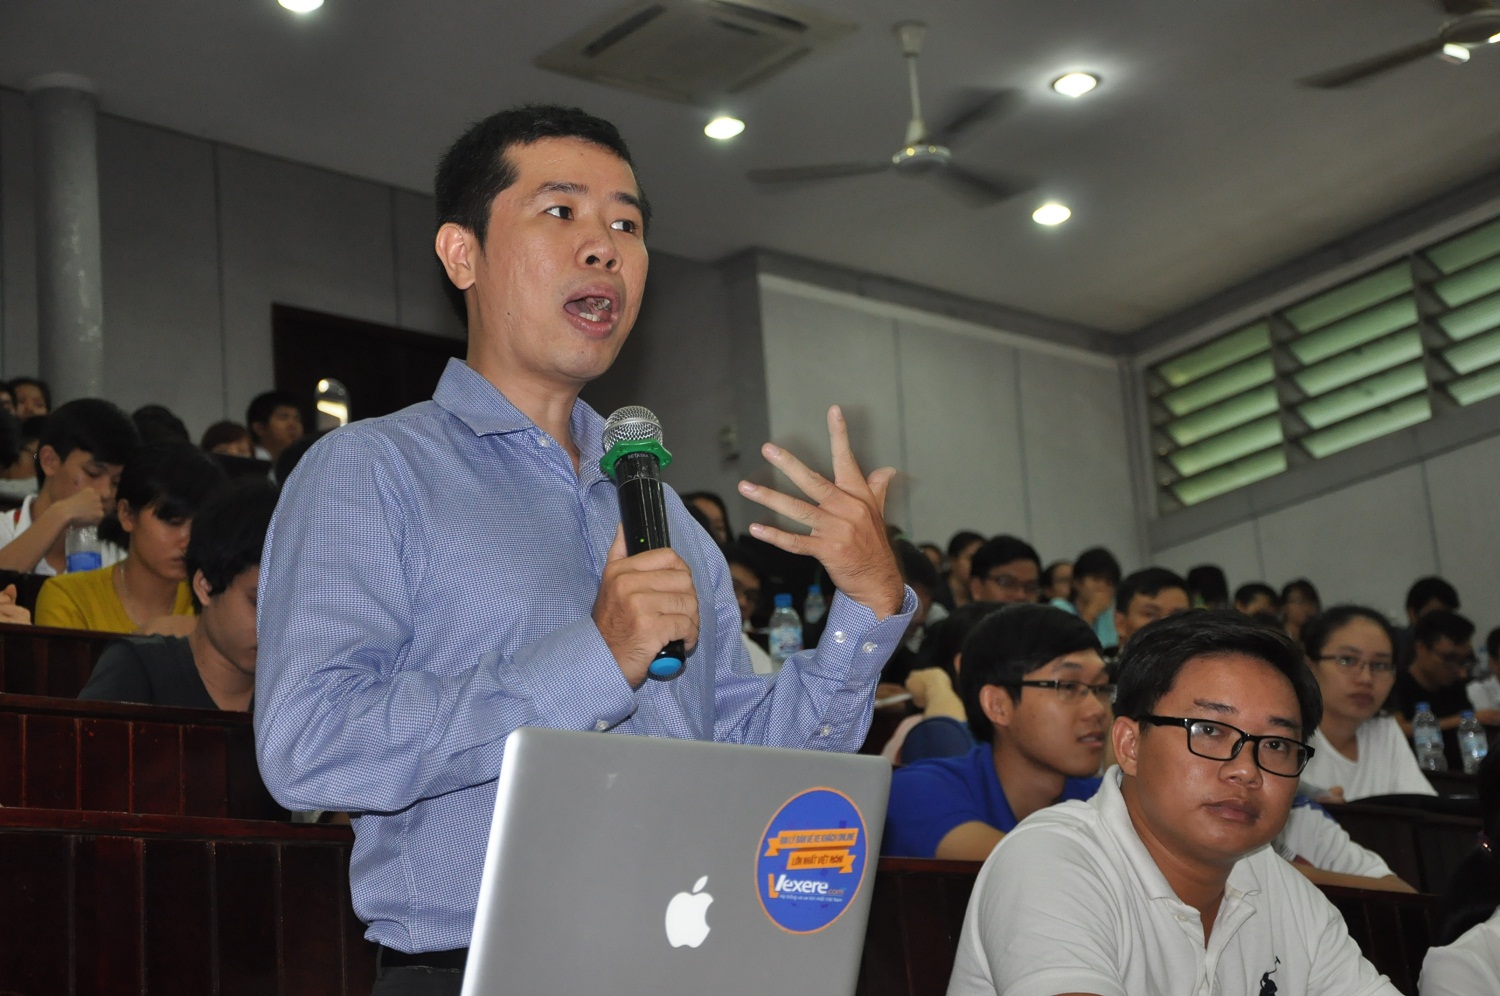 Anh Trần Nguyễn Lê Văn - đại diện nhóm tác giả “Vexere” - Đơn vị khởi nghiệp thành công, đã đạt giải Ba Nhân tài Đất Việt năm 2015 chía se với các sinh viên.